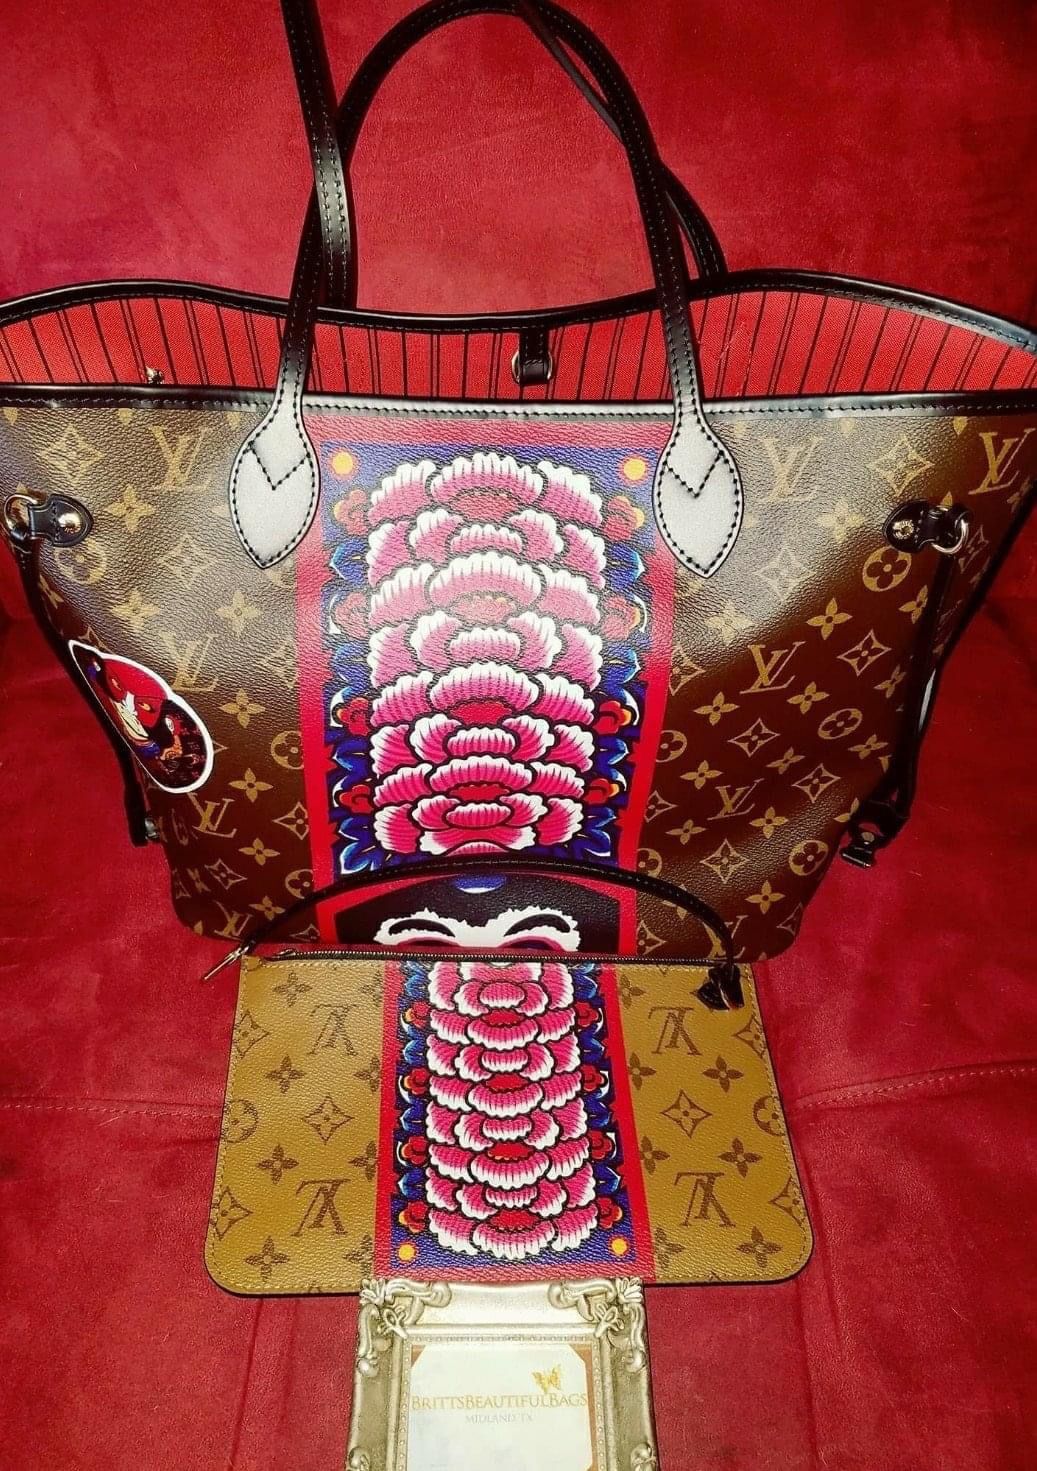 Louis Vuitton Monogram Kabuki Neverfull MM - Brown Totes, Handbags